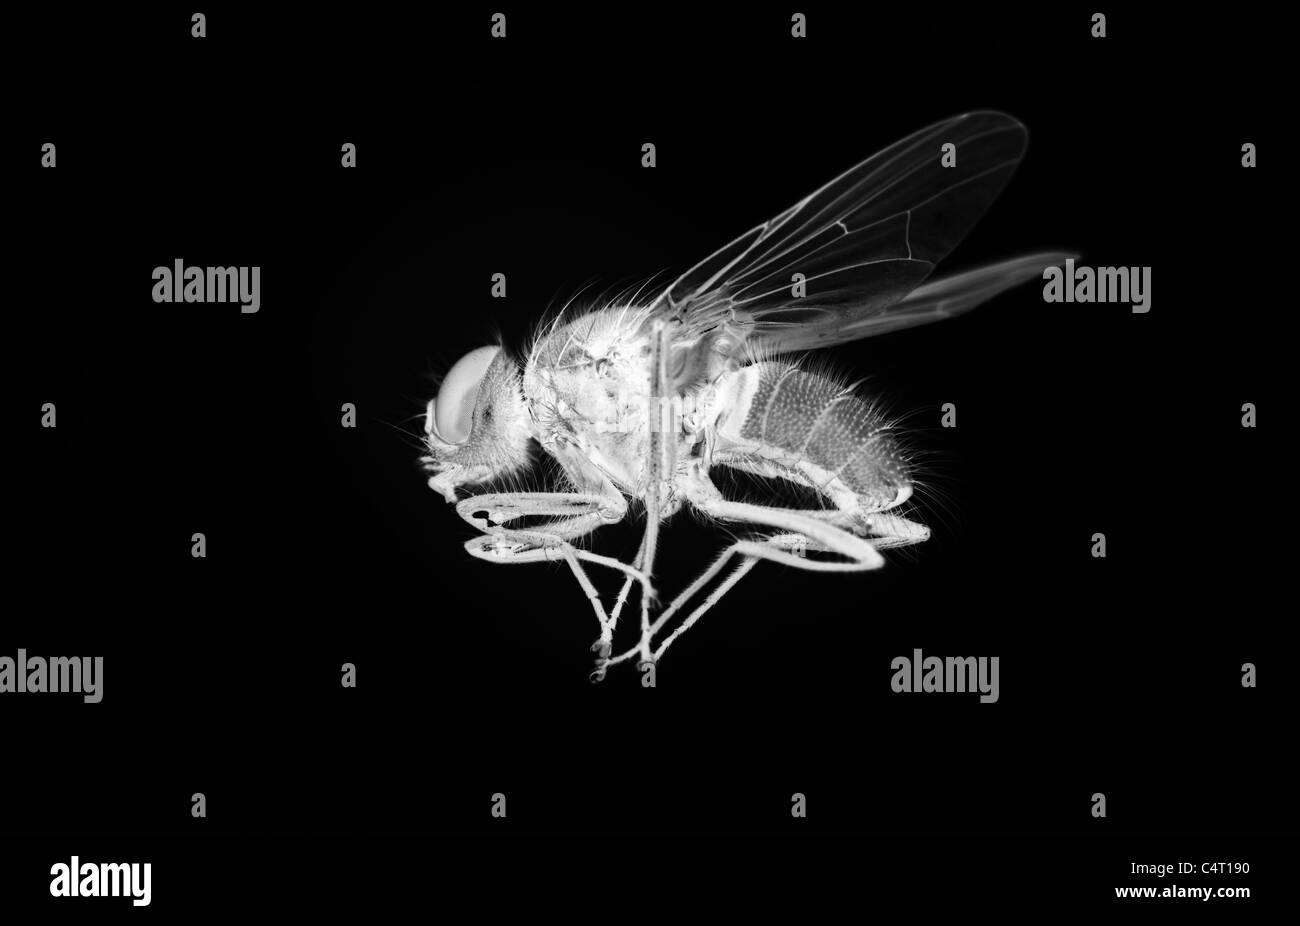 Imagen negativa de una mosca doméstica Foto de stock